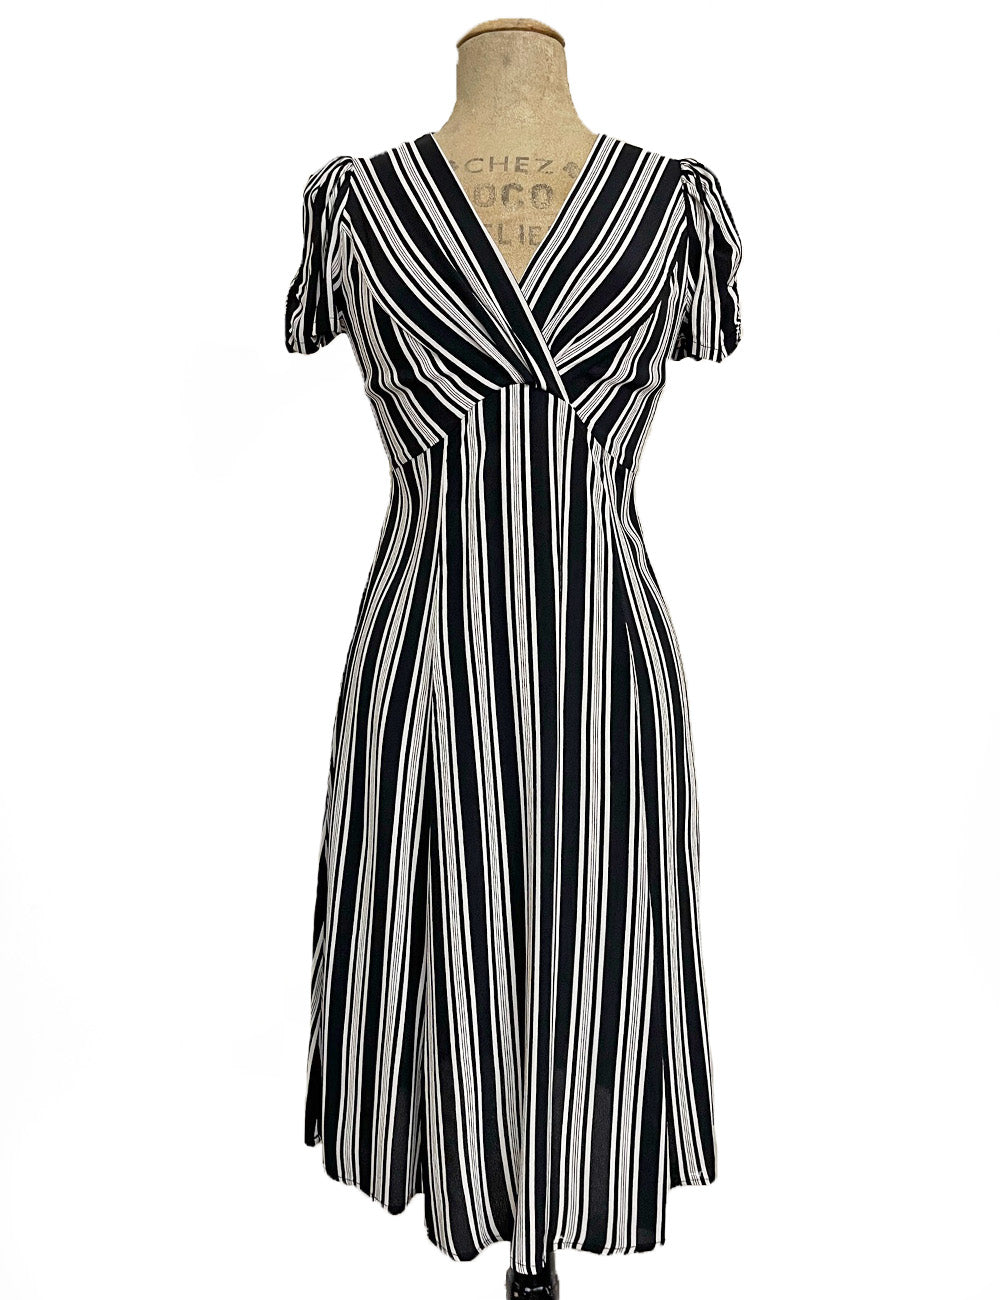 Black & White Noir Stripe Vintage Inspired Rita Dress